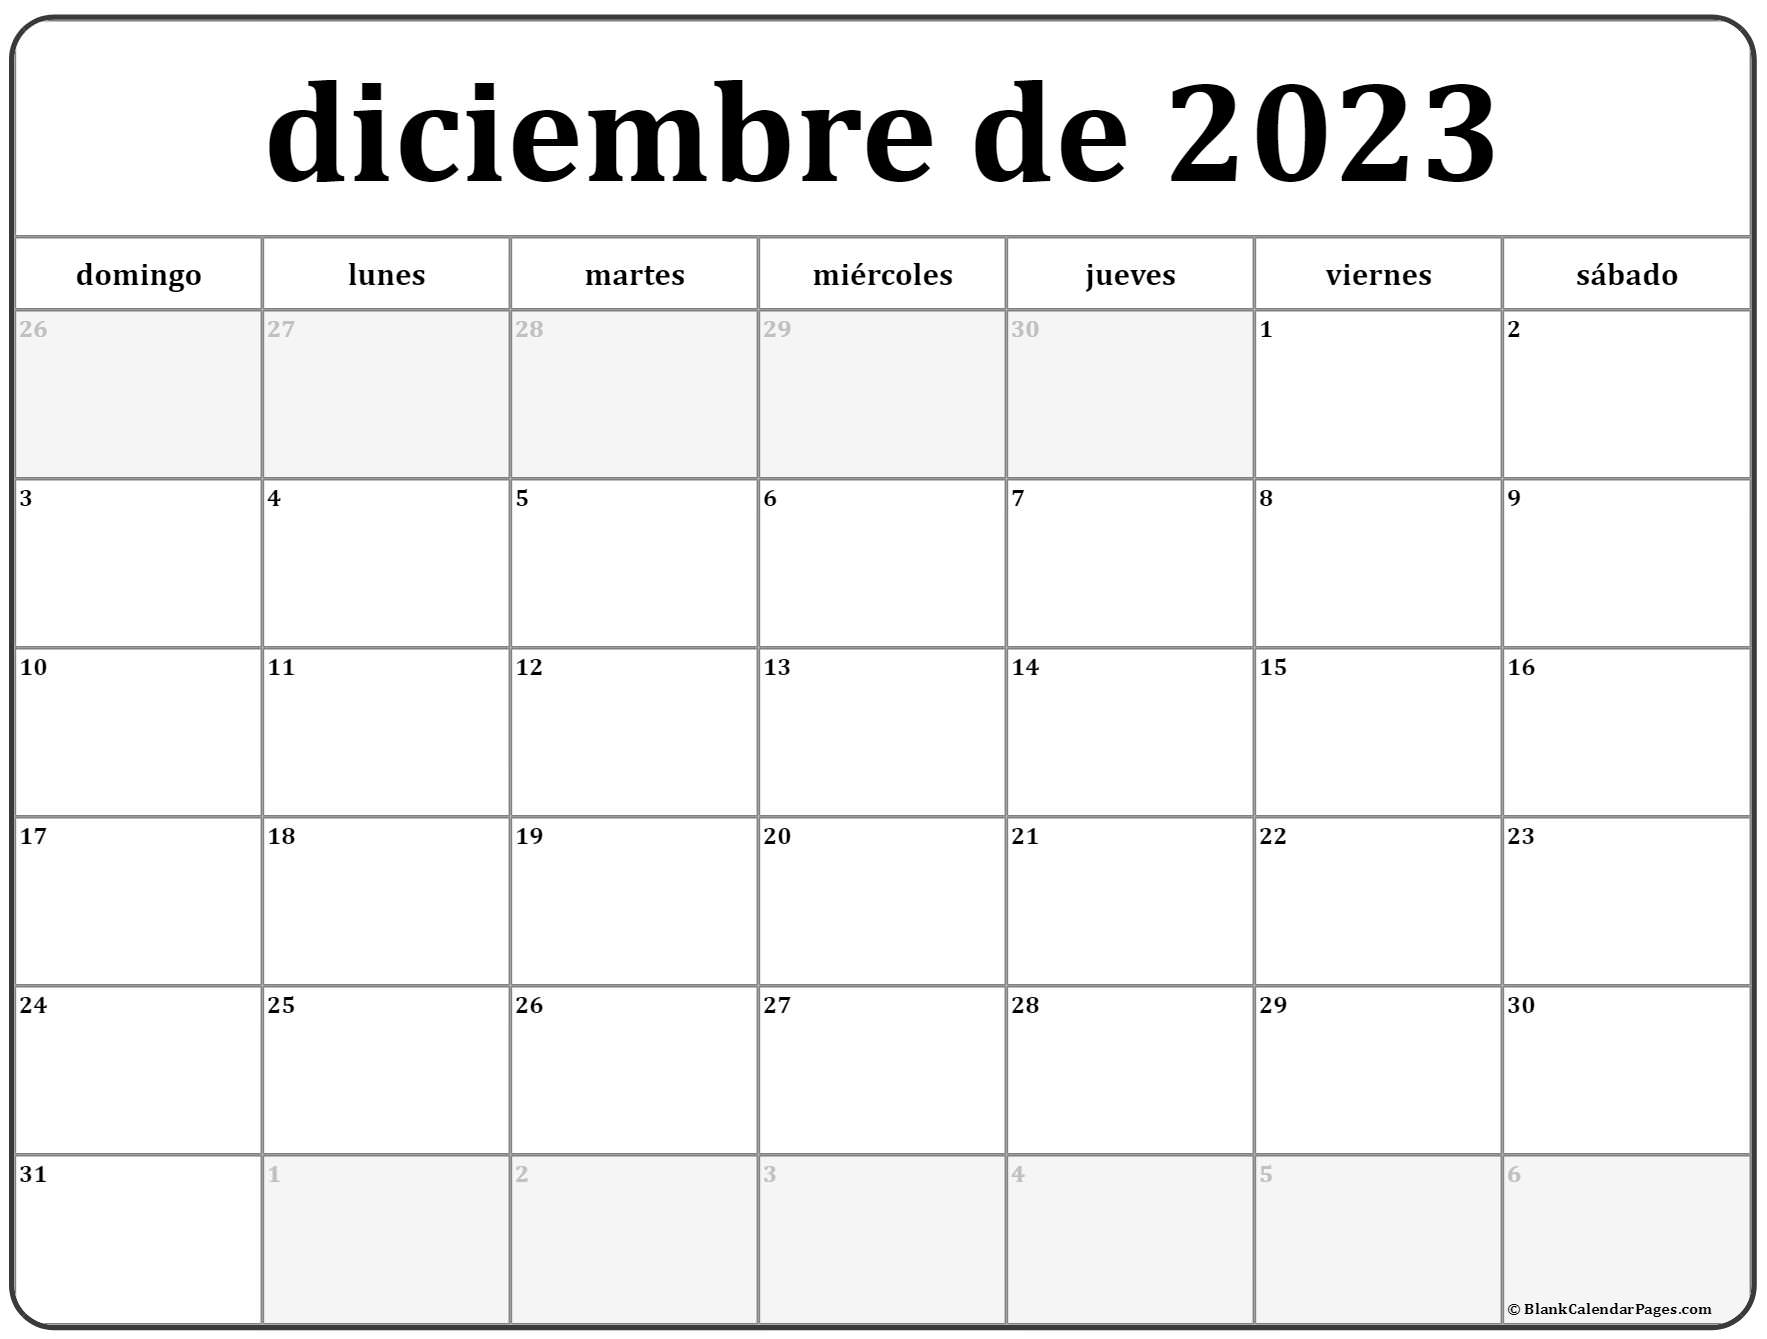 Mes De Diciembre 2023 diciembre de 2023 calendario gratis | Calendario diciembre